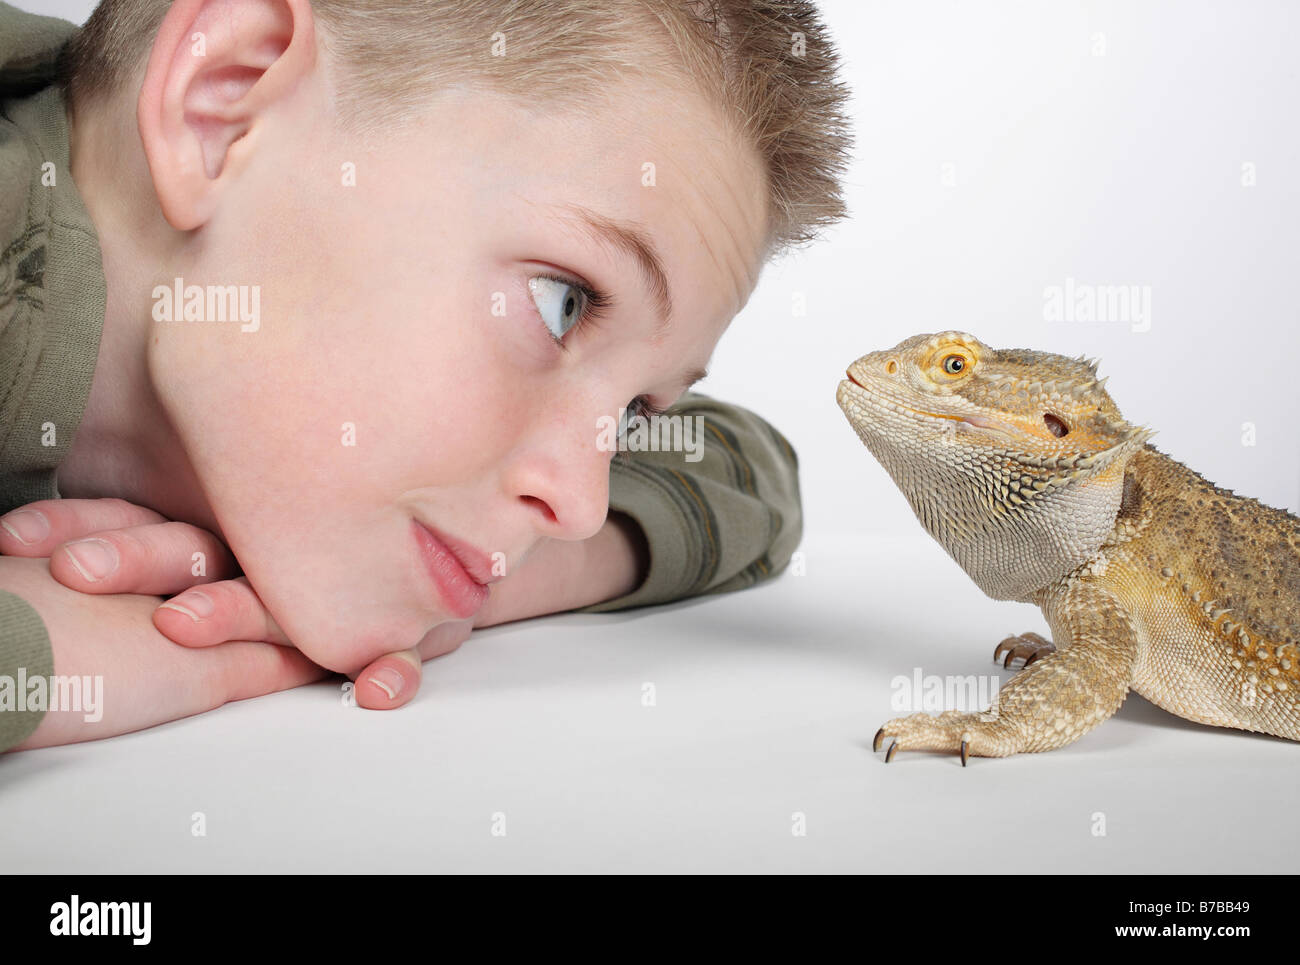 close-up of little boy admiring pet lizard Stock Photo